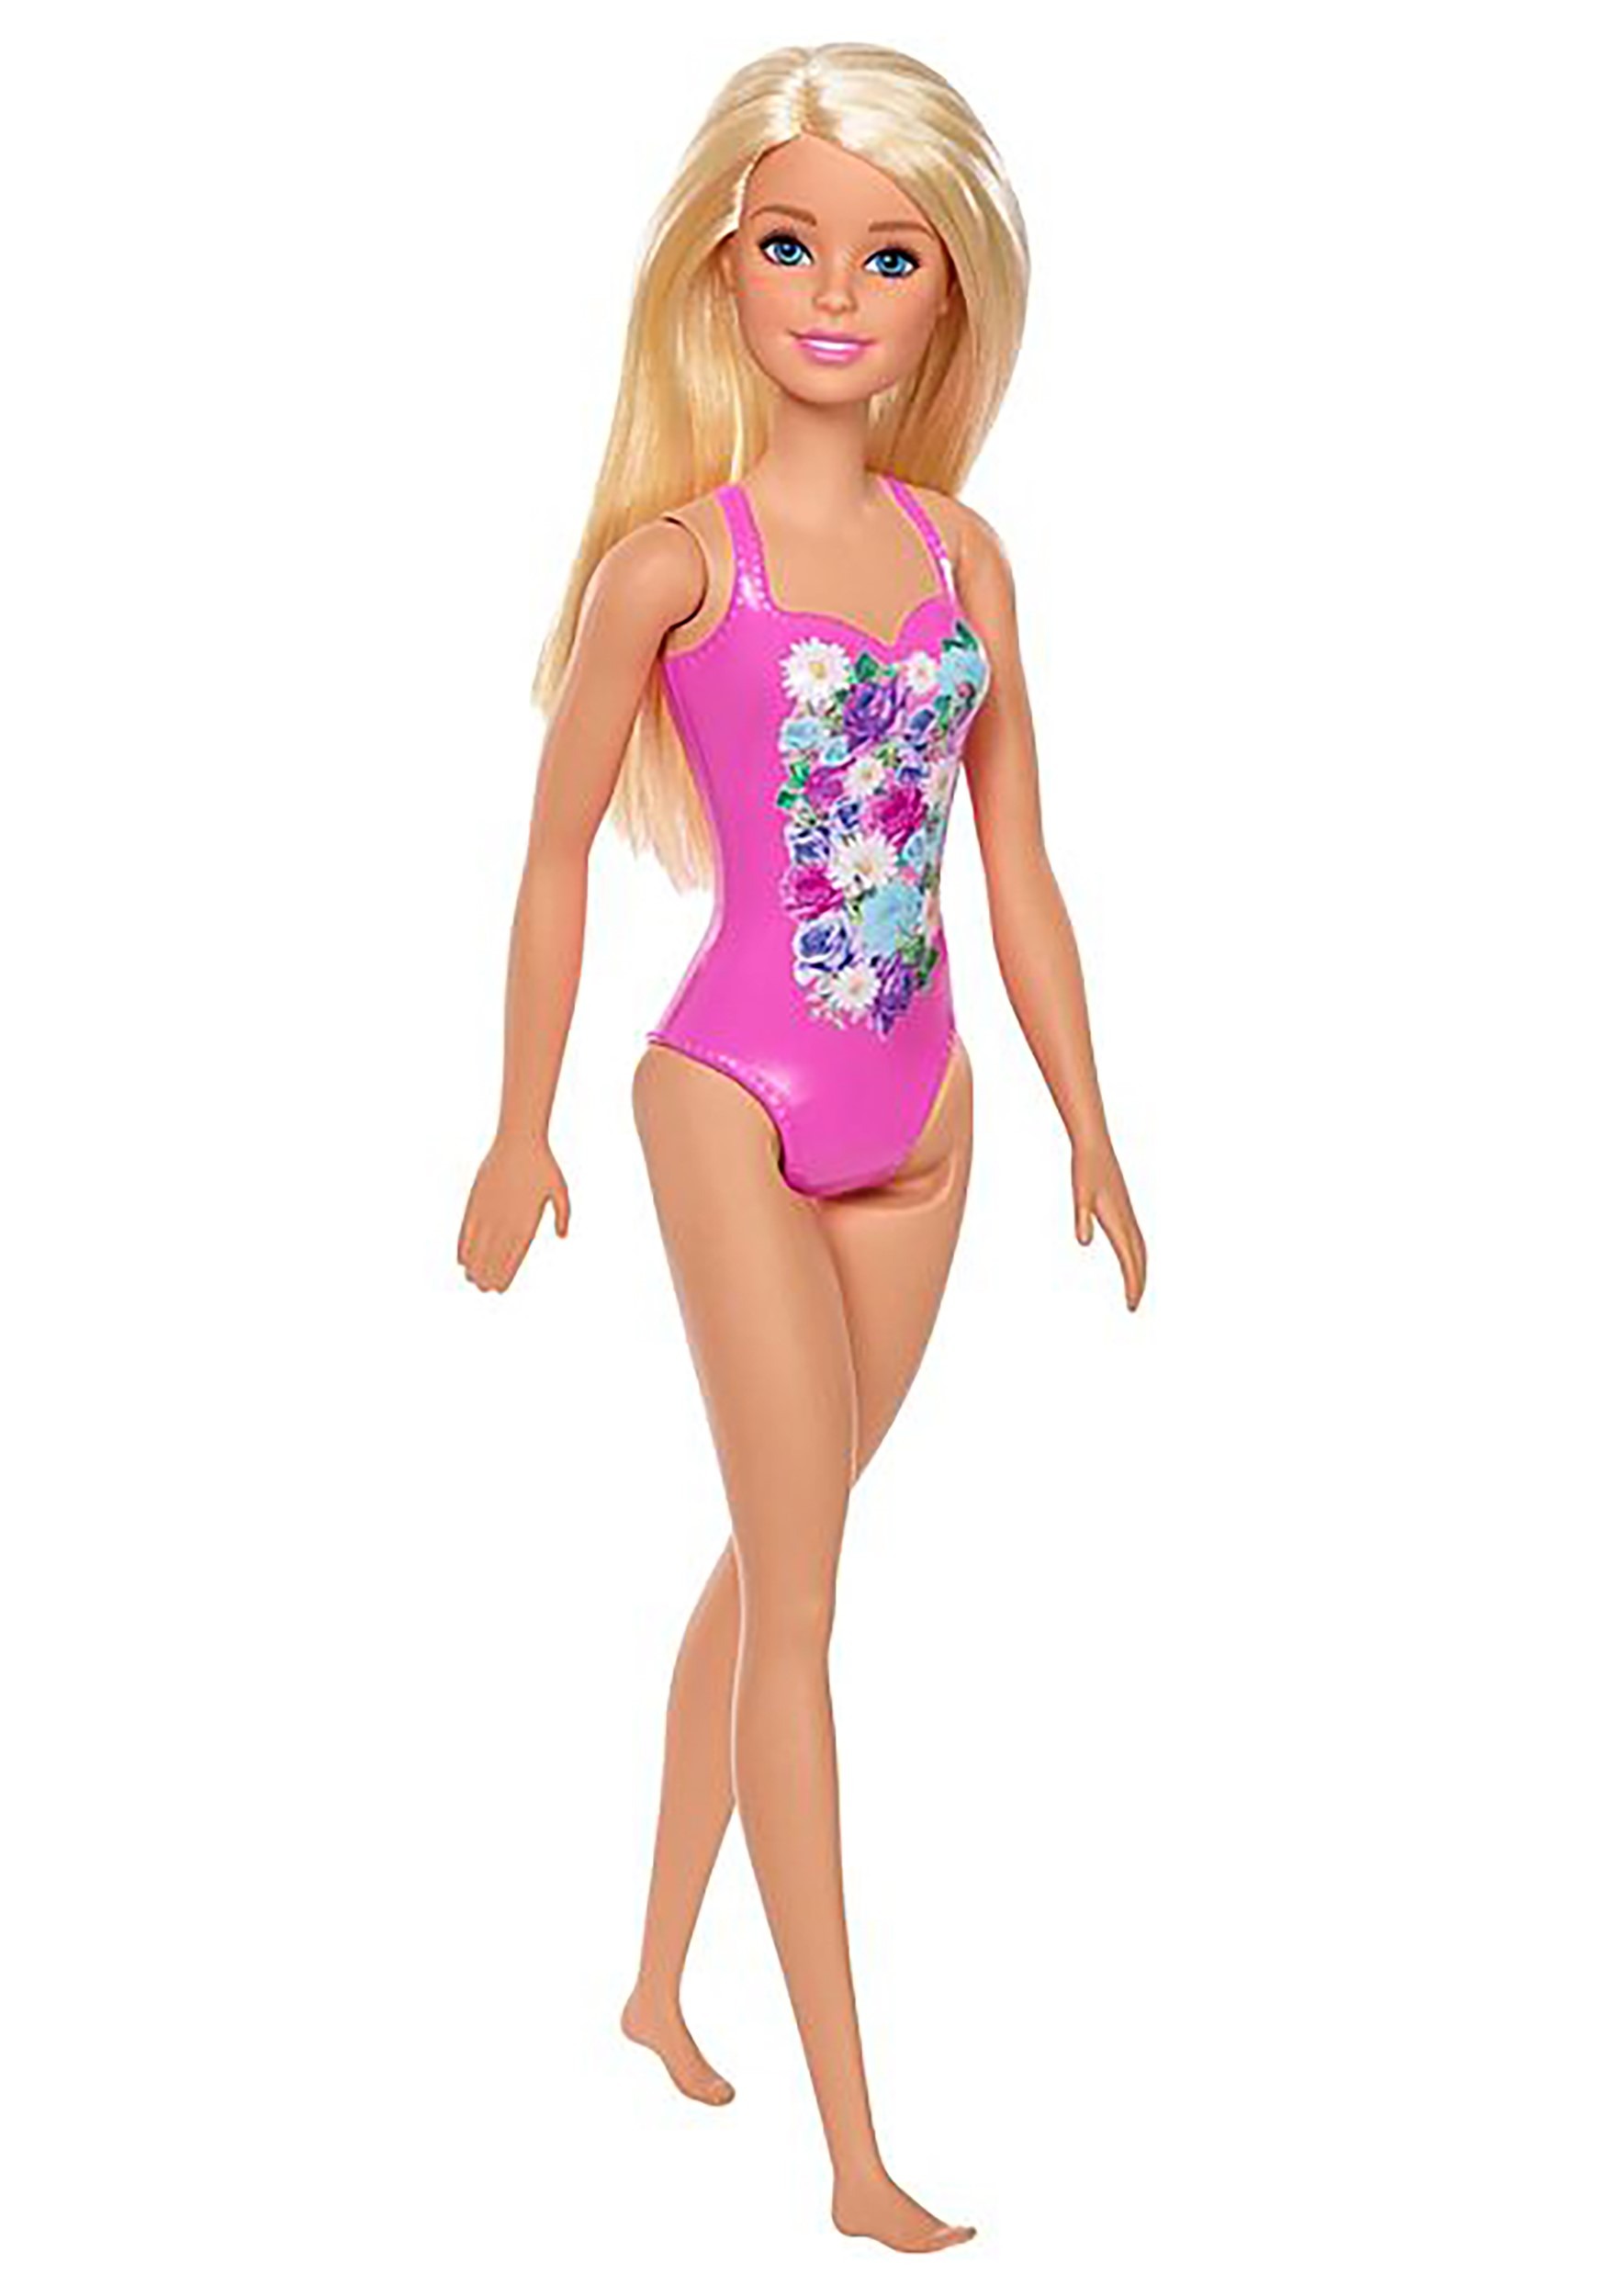 Beach Barbie Doll